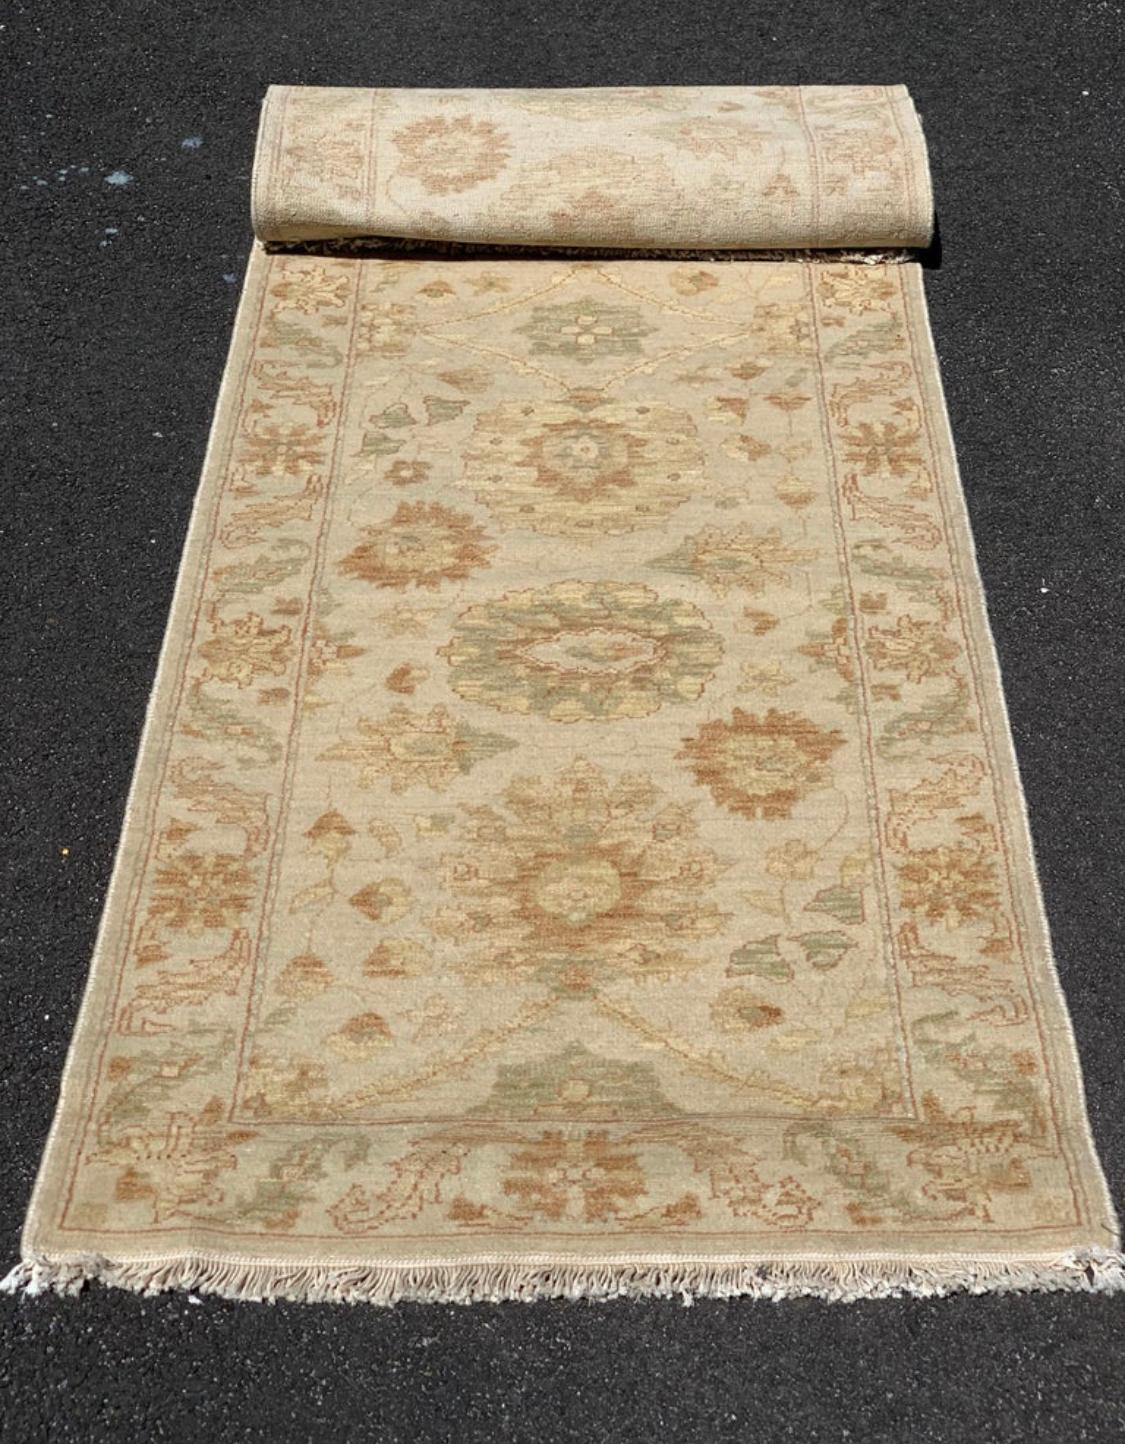 Dies ist eine neue Ende des 20. Jahrhunderts beige Elfenbein floral persischen Stil Läufer Teppich handgewebt in Alexandria, Ägypten in den 1990er Jahren. Wir haben diese Teppiche hergestellt und das Design und die Farben von Hand ausgewählt. Wir